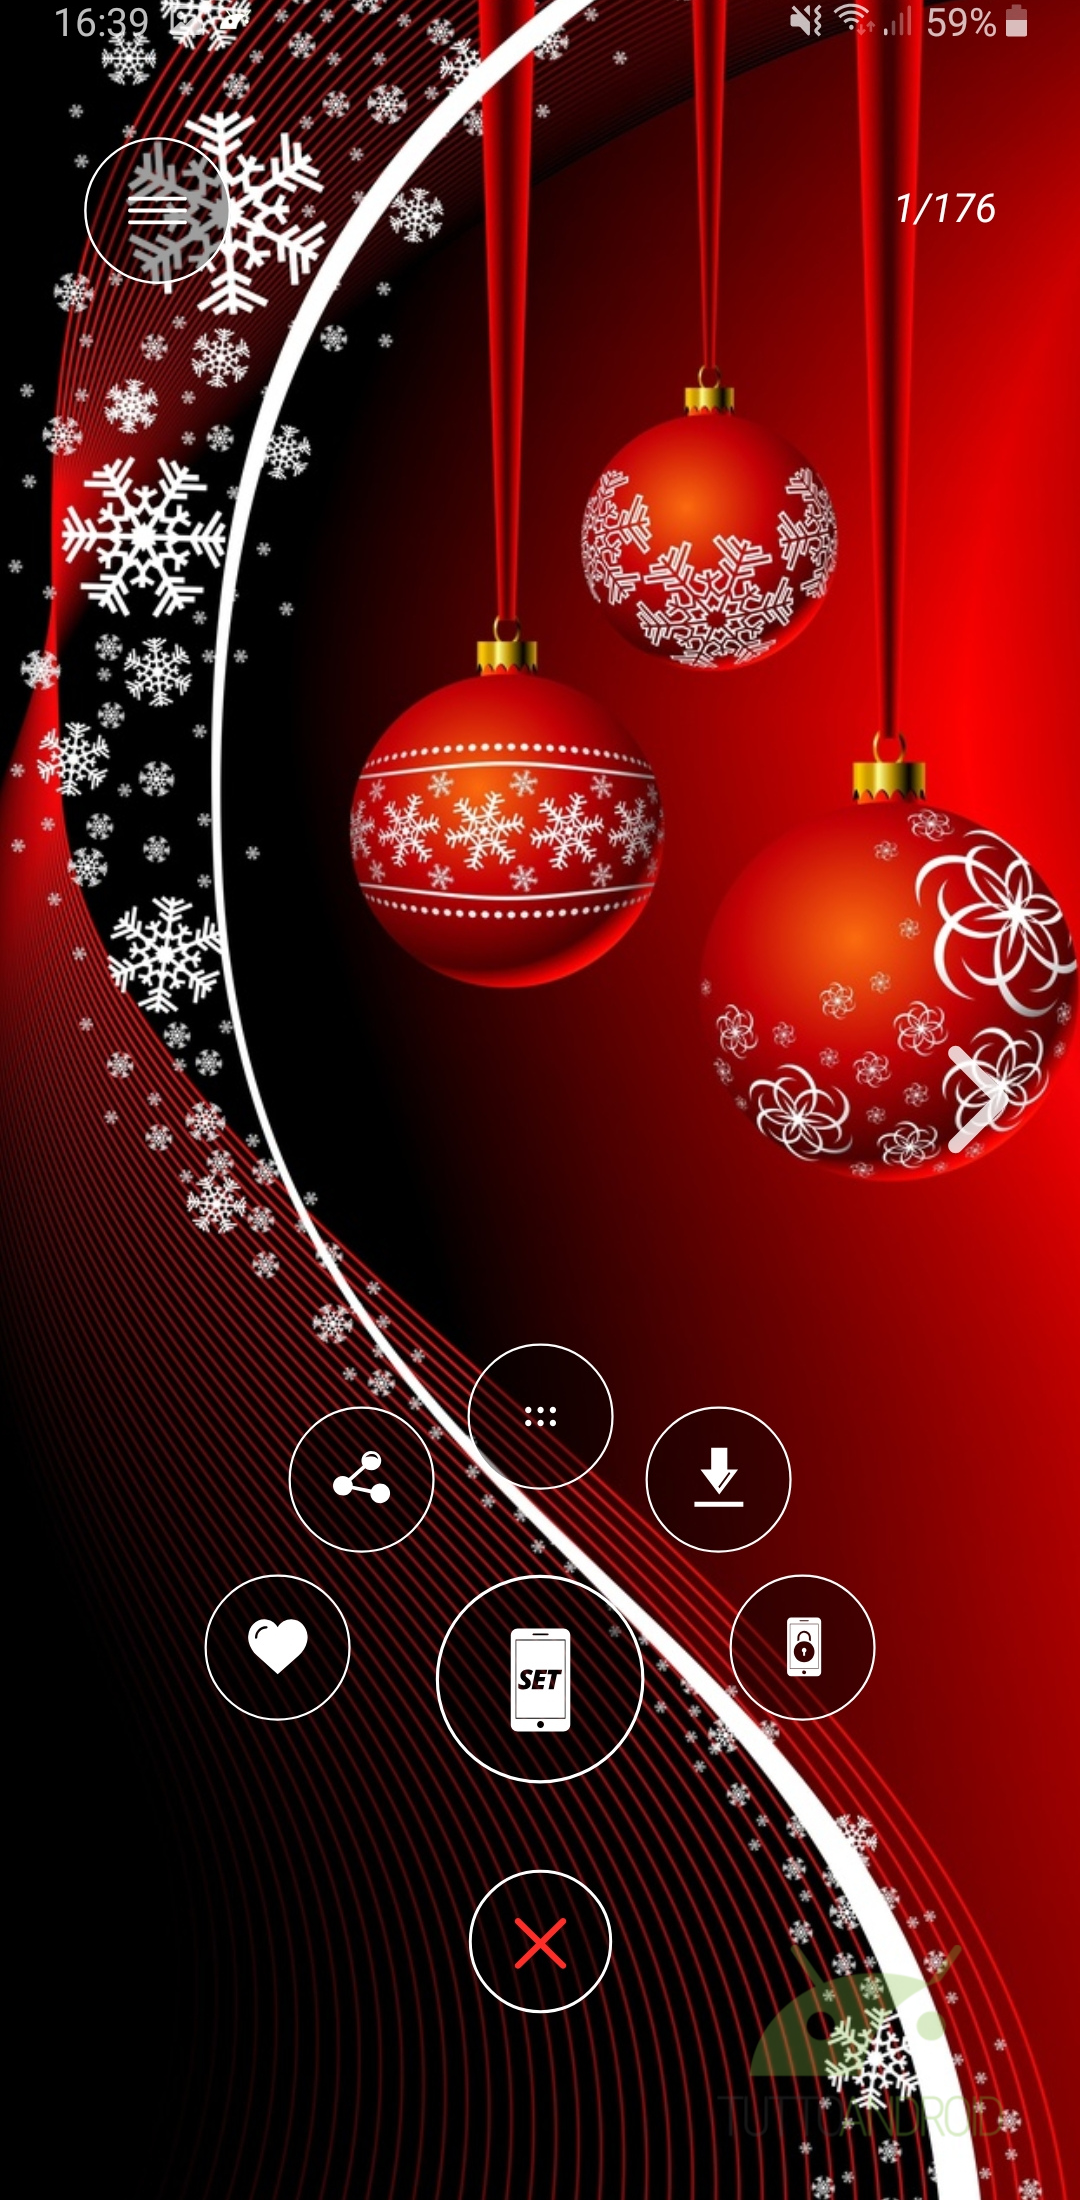 Sfondi Natalizi 4k.Trasformate Lo Smartphone In Una Festa Di Natale Con Queste 6 App